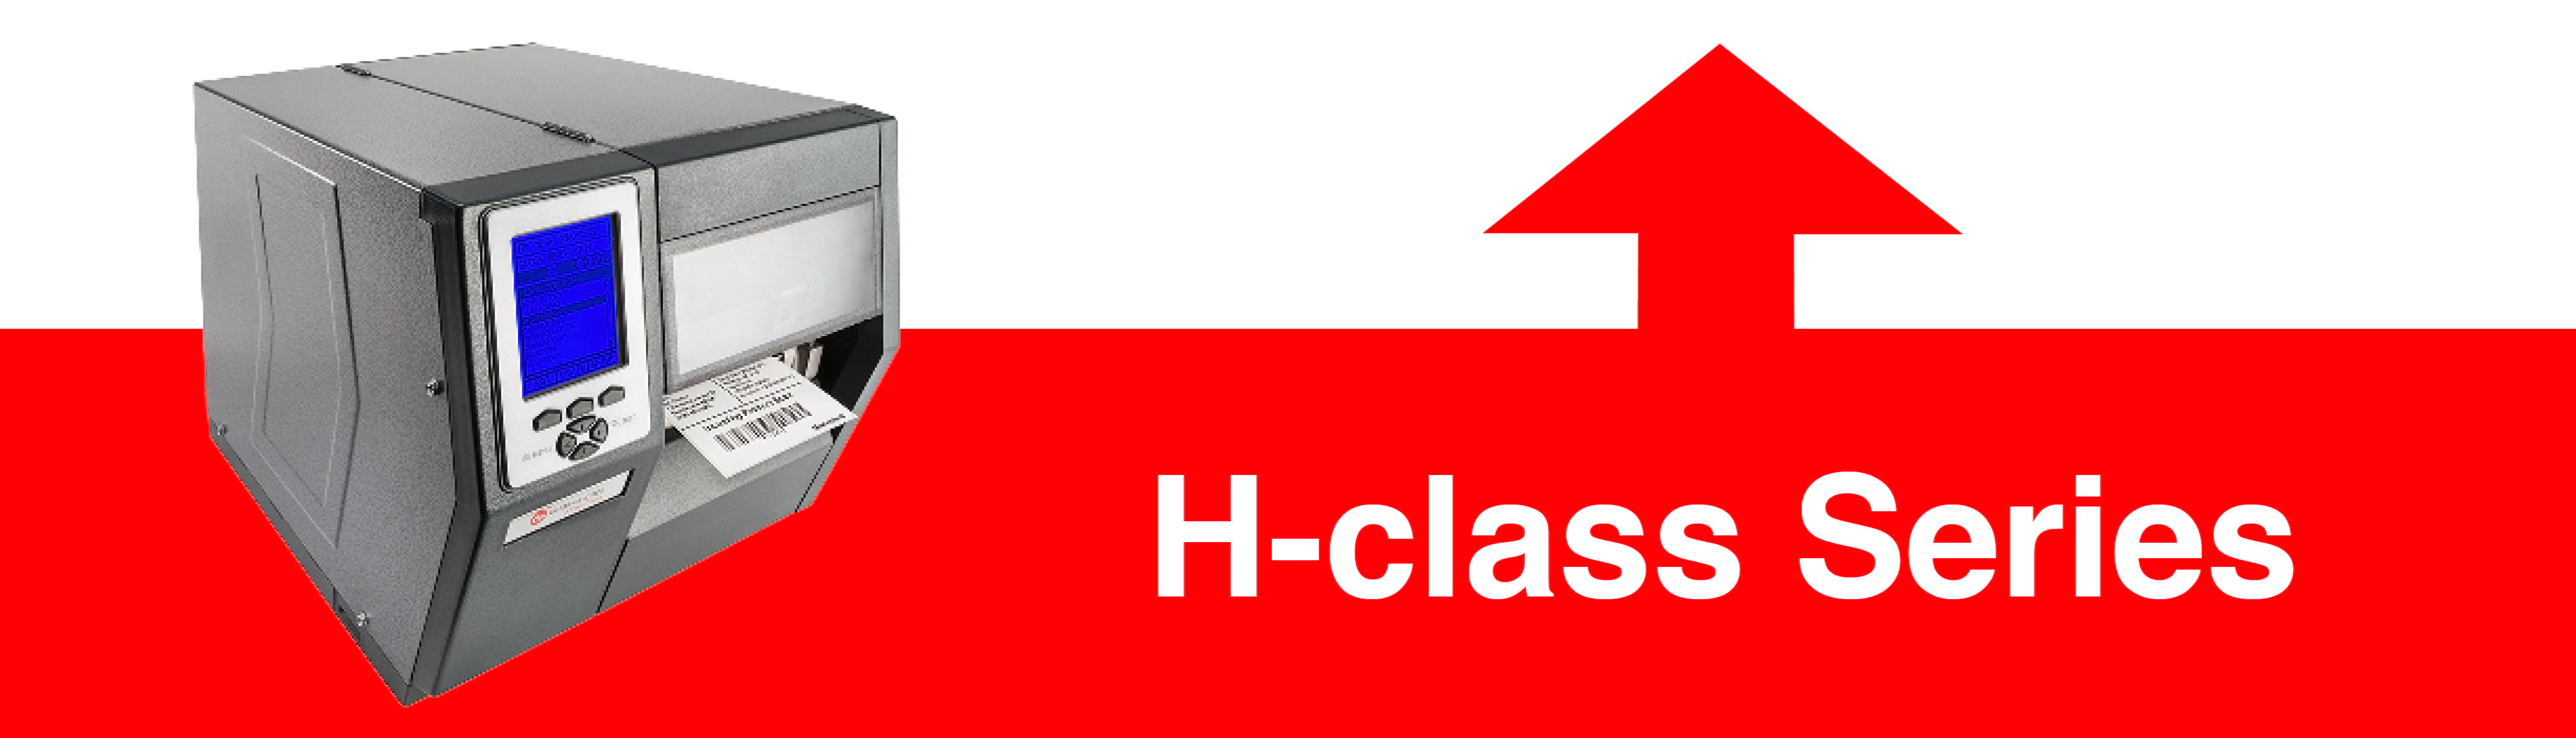 H-class Series